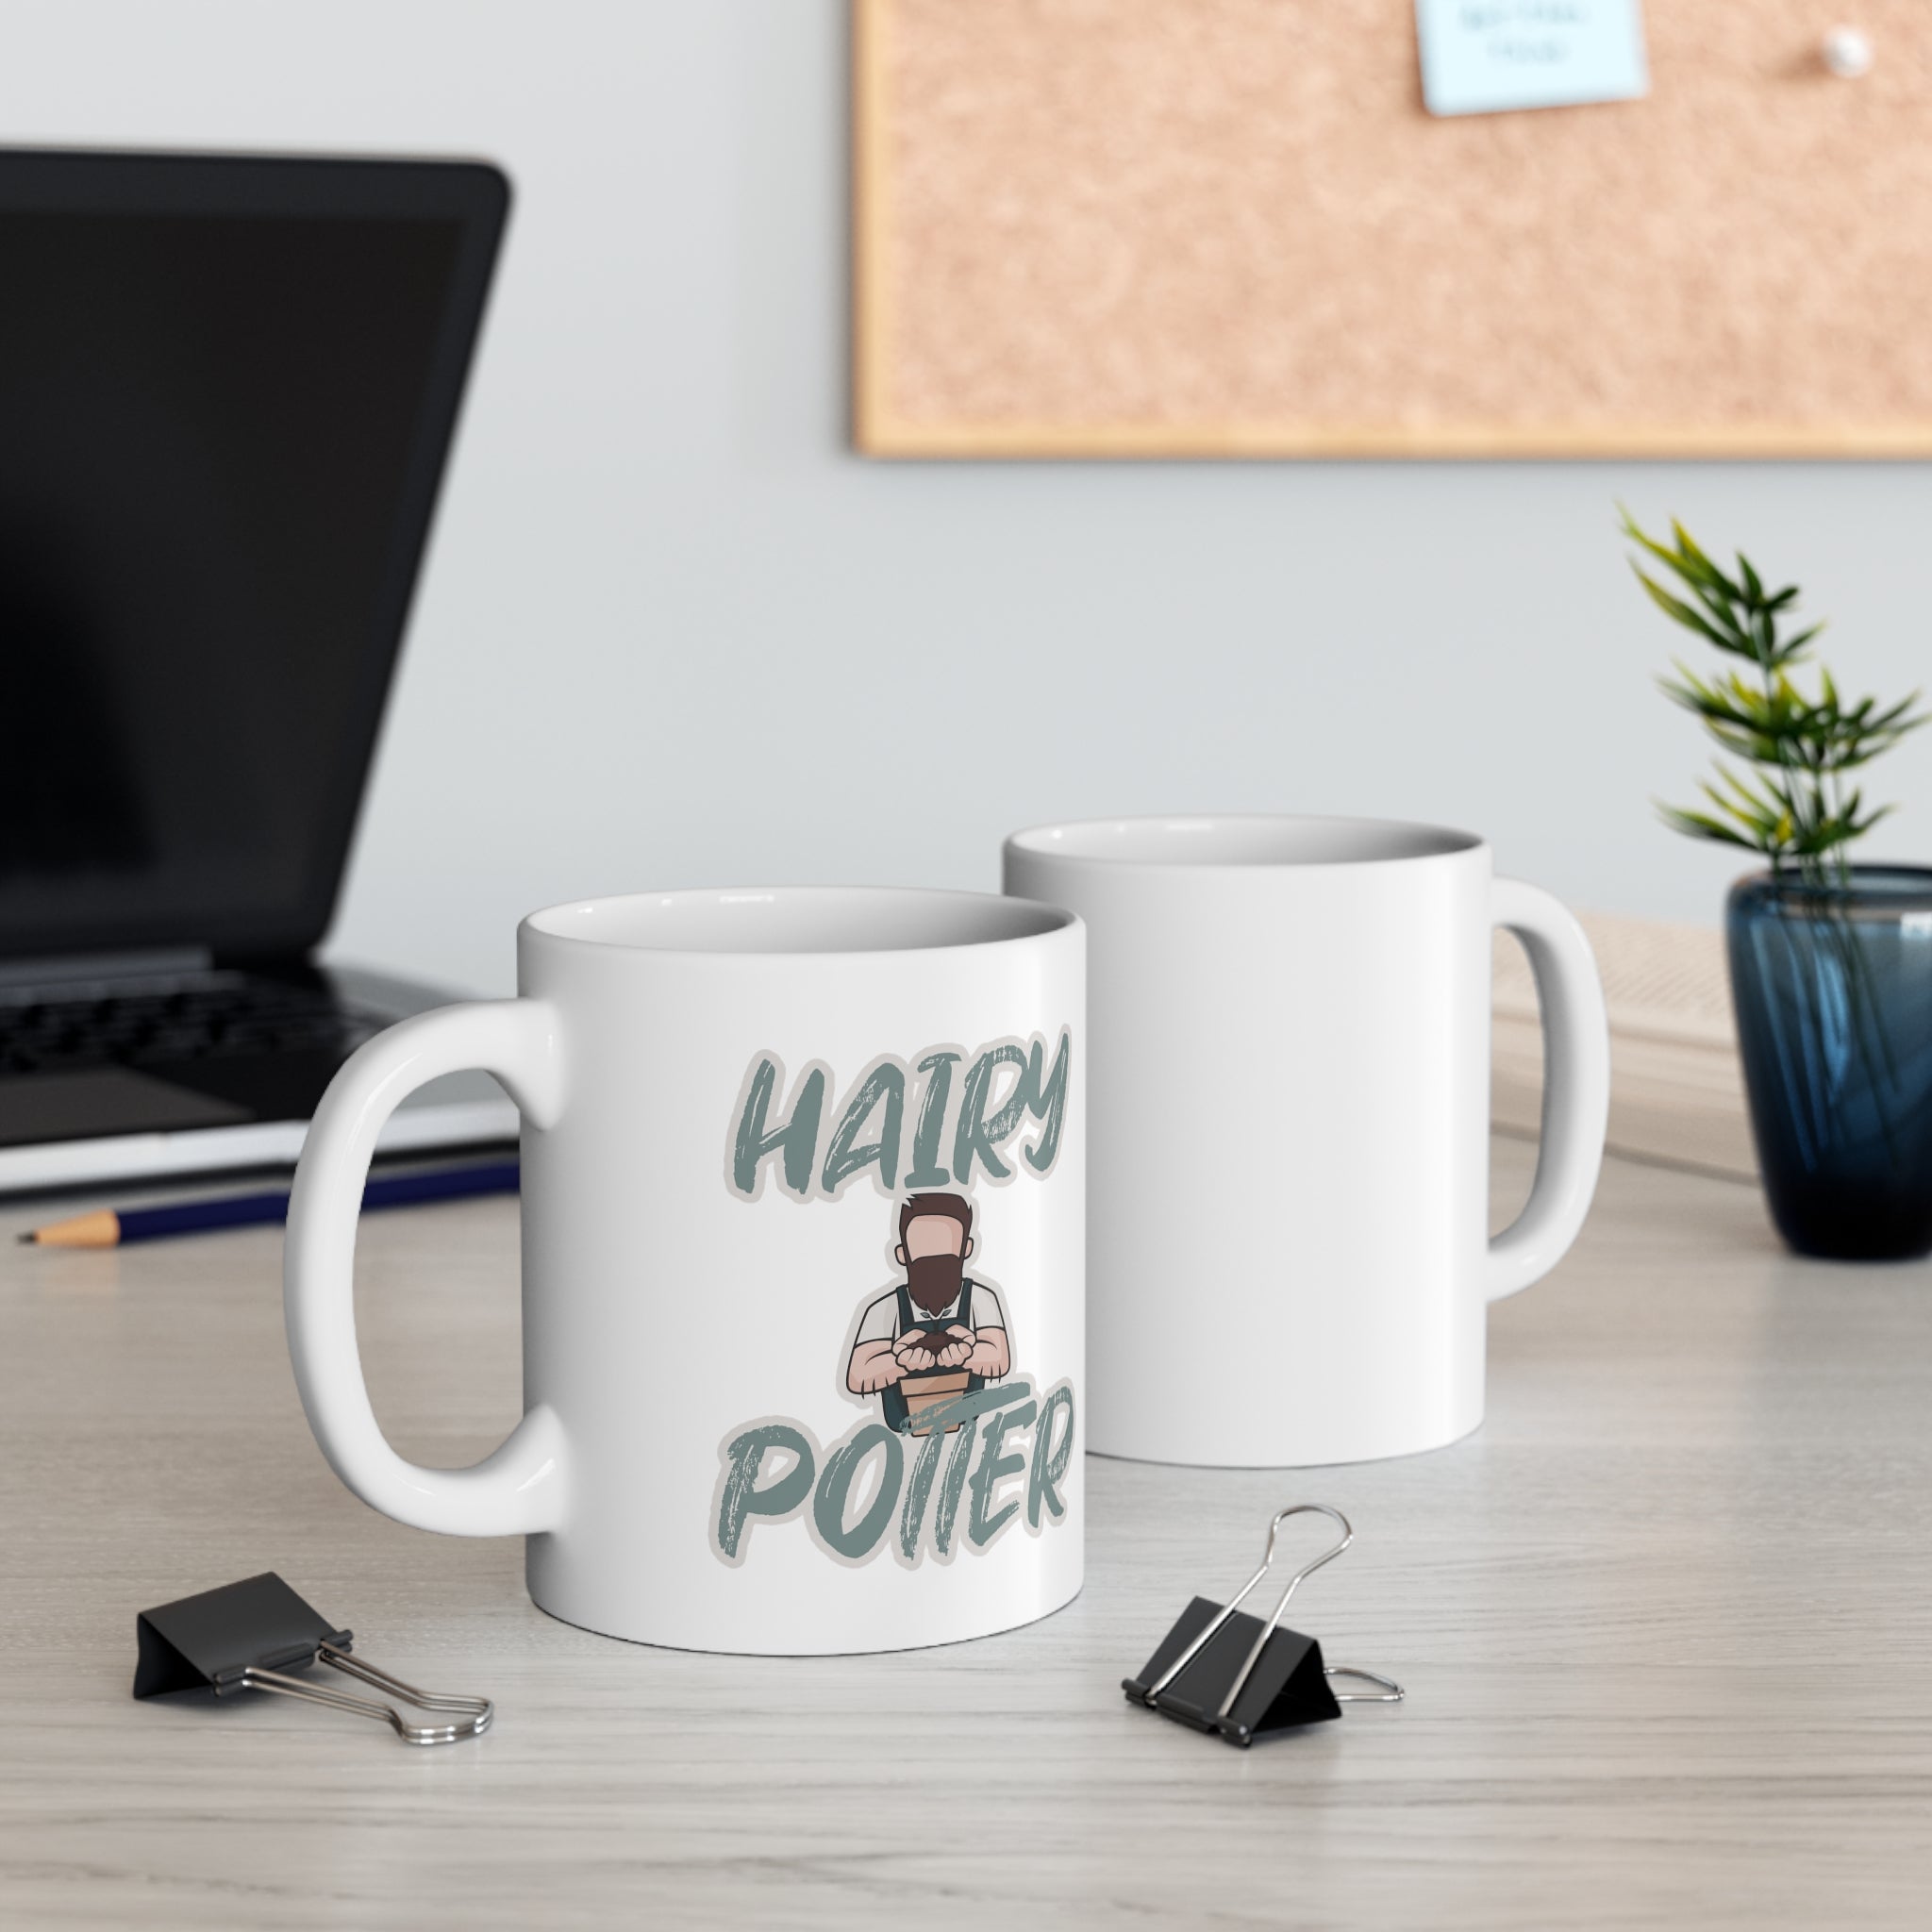 Hairy Potter Mug